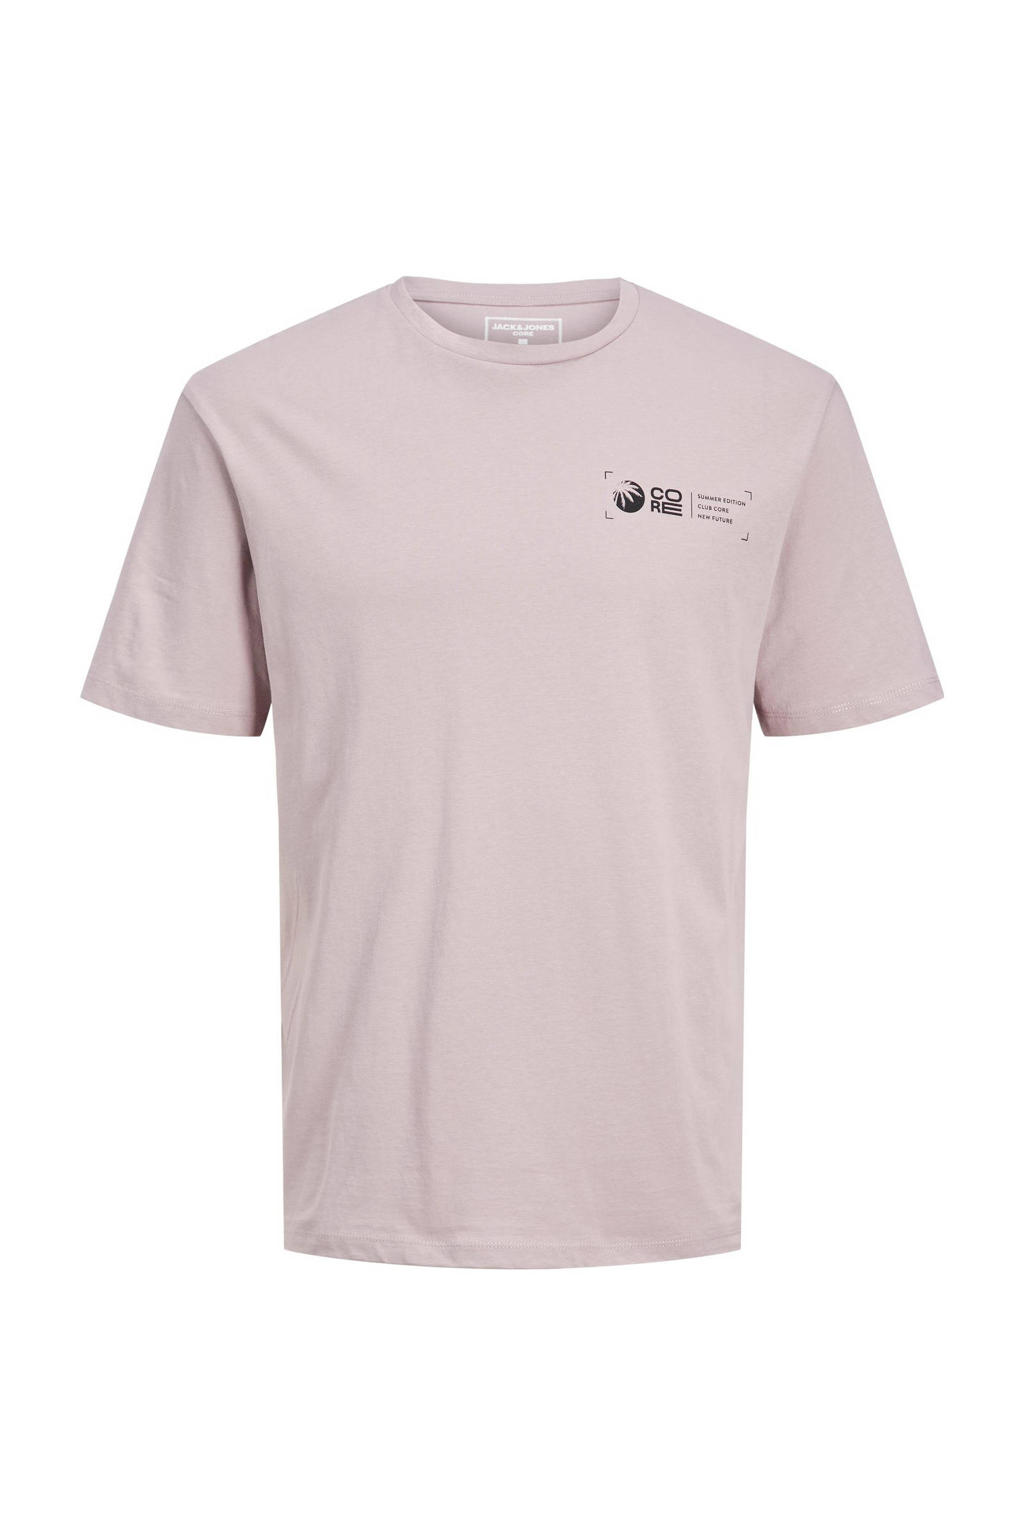 JACK & JONES JUNIOR T-shirt JCOLEUR roze